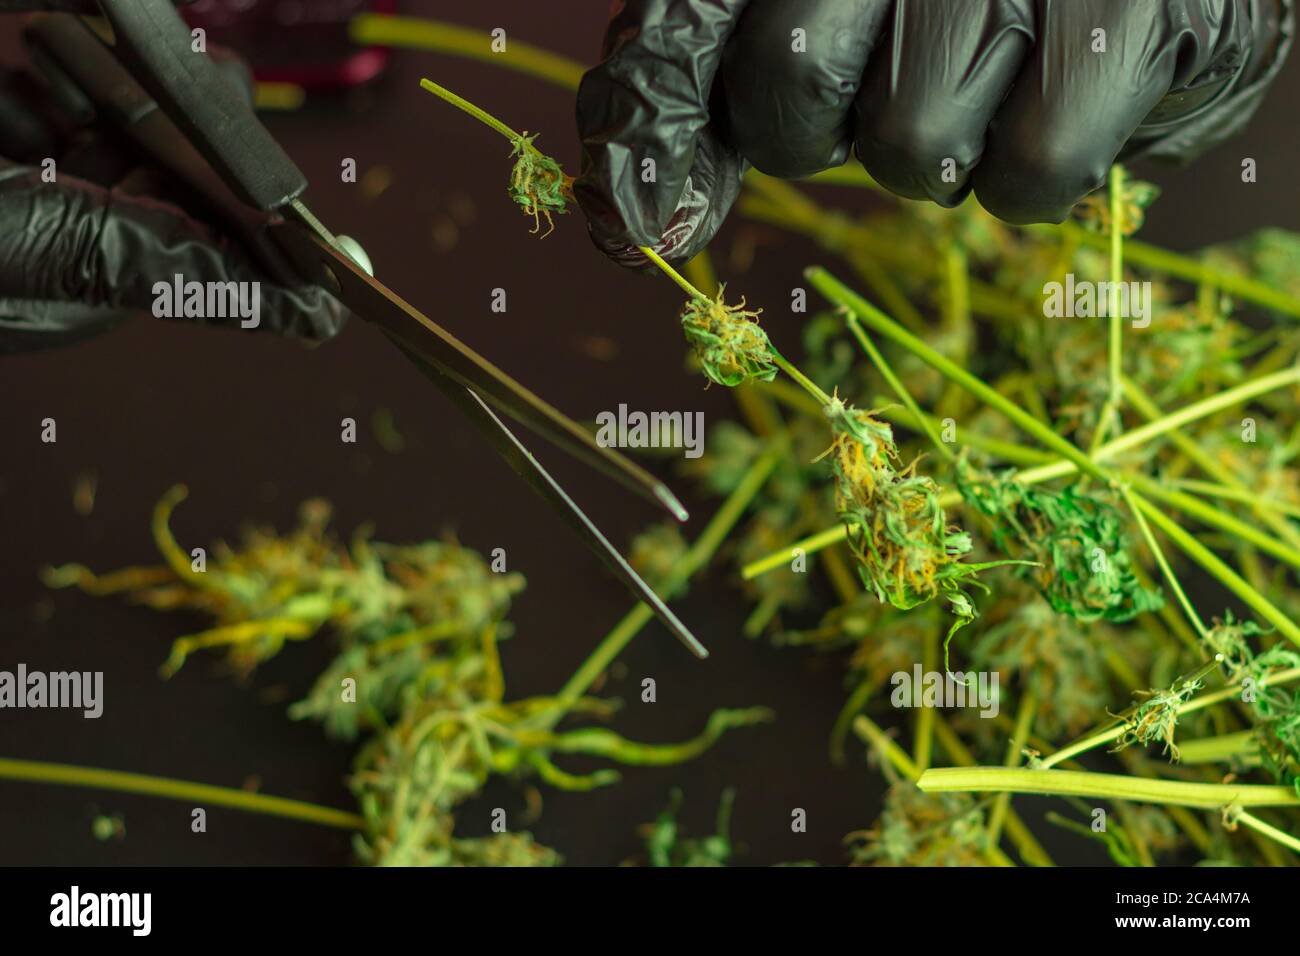 Cannabis Industrie Geschäft, kommerzielle Marihuana-Produktion. Unkrautpflanzen trimmen, ernten und kürzen. Mann Hand in Handschuhe mit Schere Stockfoto